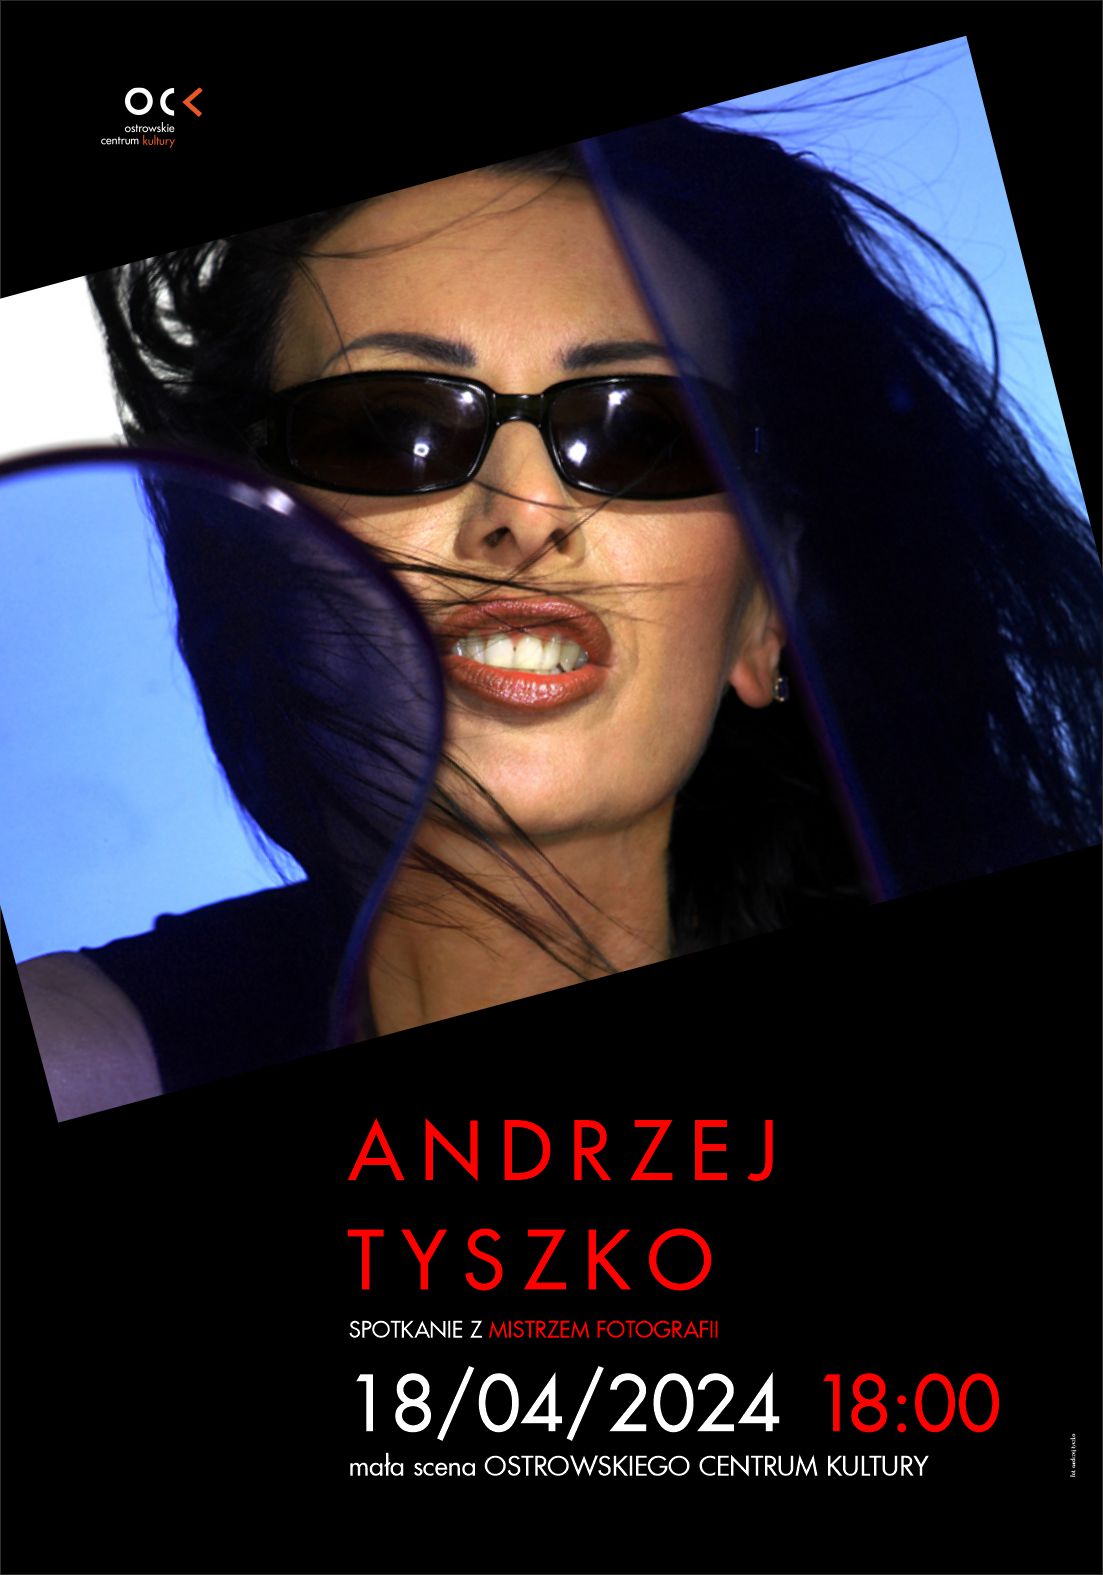 Andrzej Tyszko | Spotkanie z mistrzem fotografii